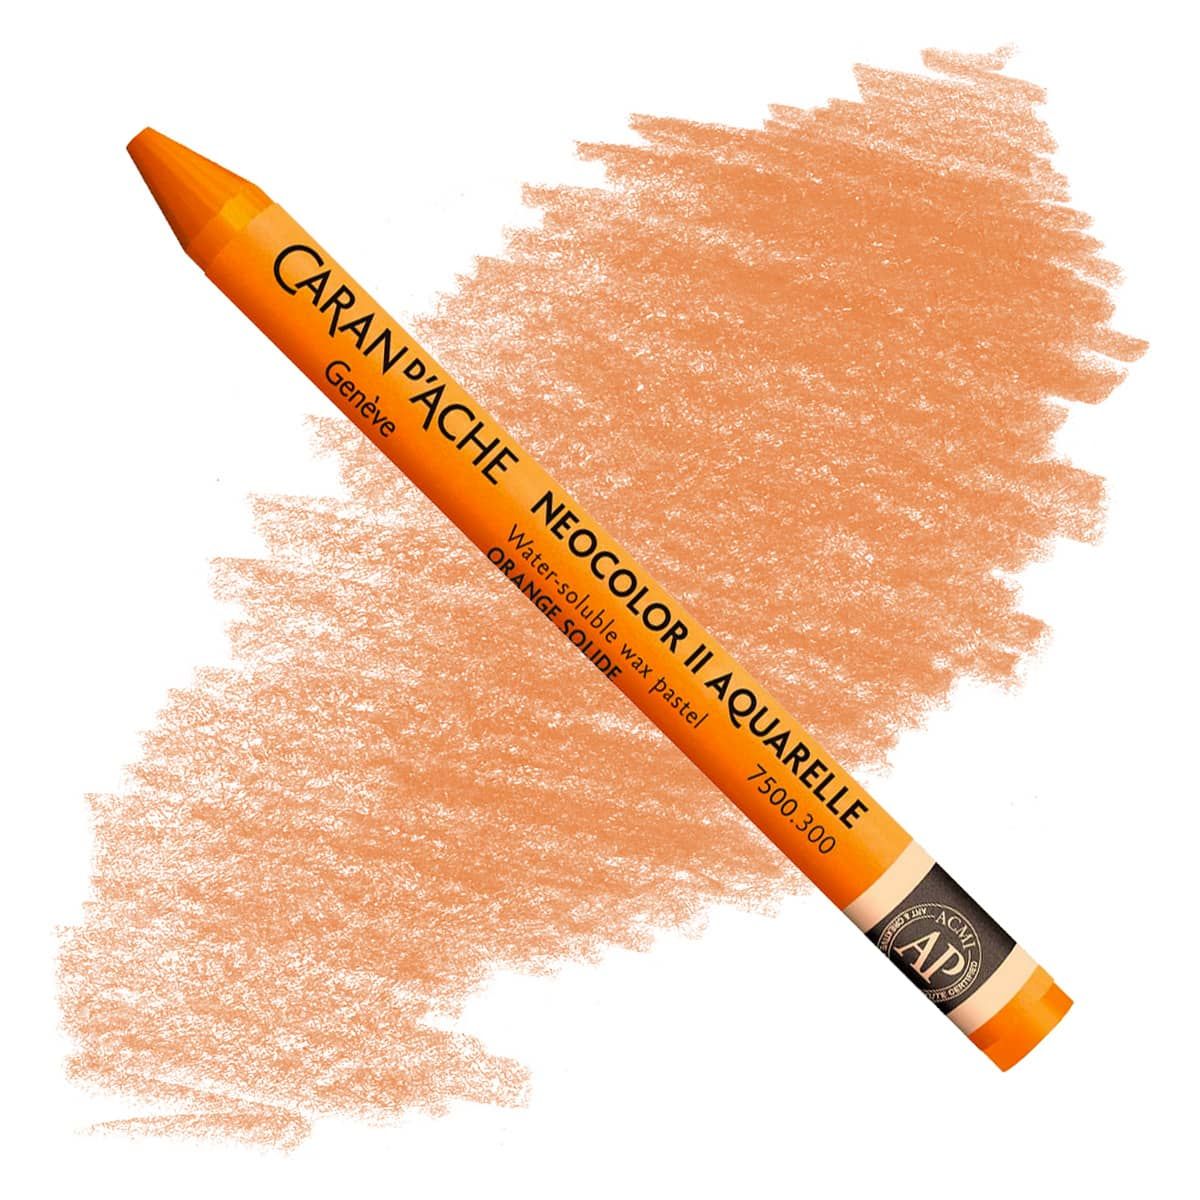 Caran d'Ache Neocolor II Crayons Individual No. 300 - Fast Orange